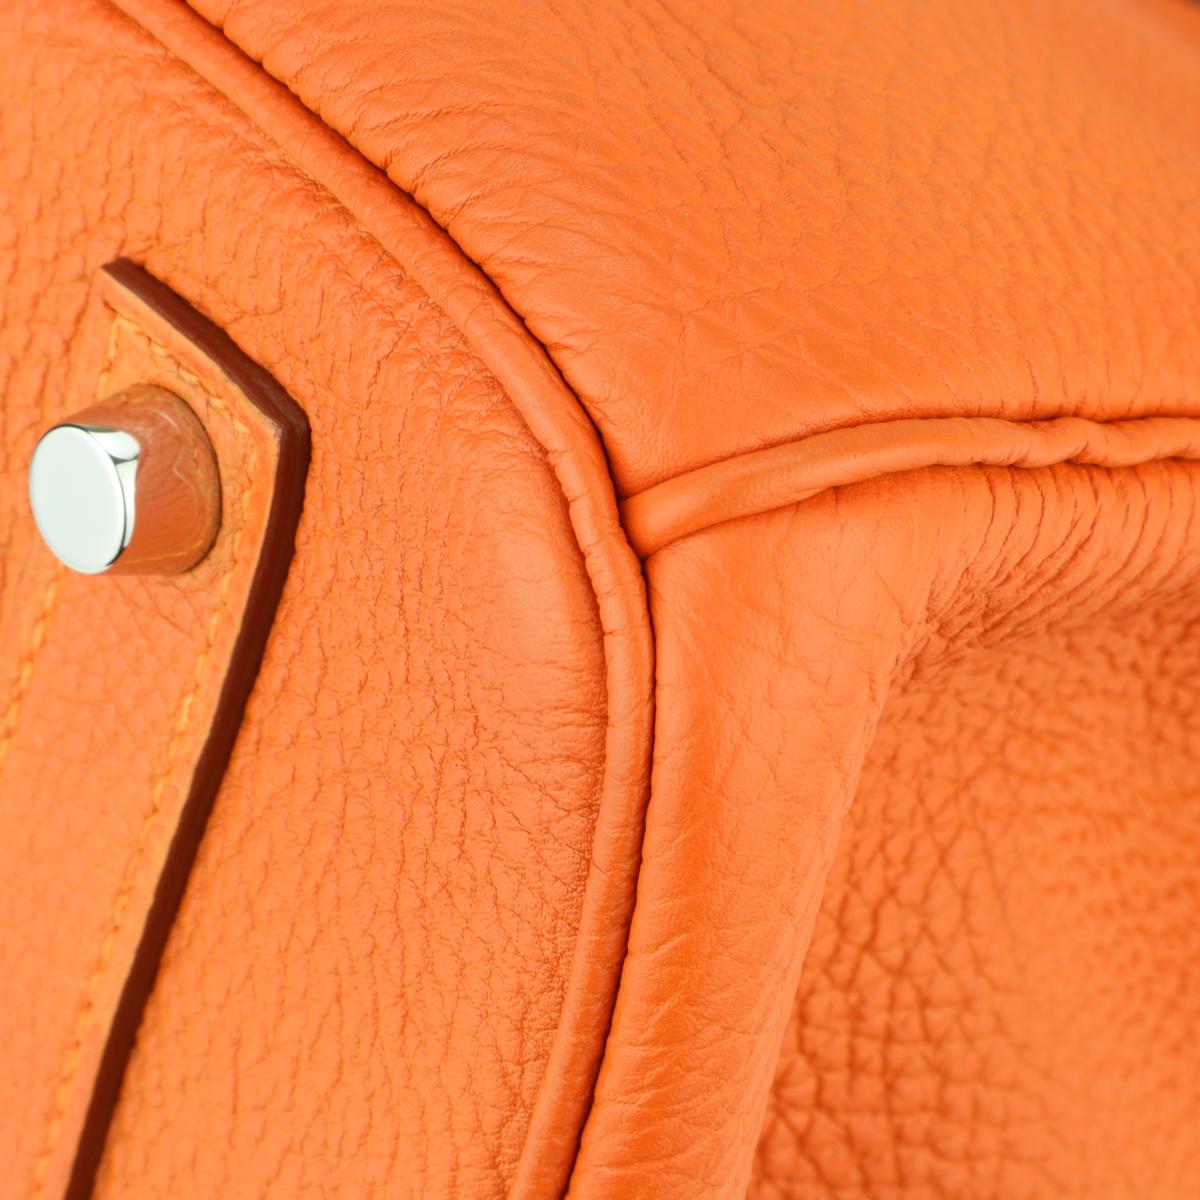 Hermès Birkin Bag 35cm Orange Togo Leather with Palladium Hardware Stamp M 2009 3